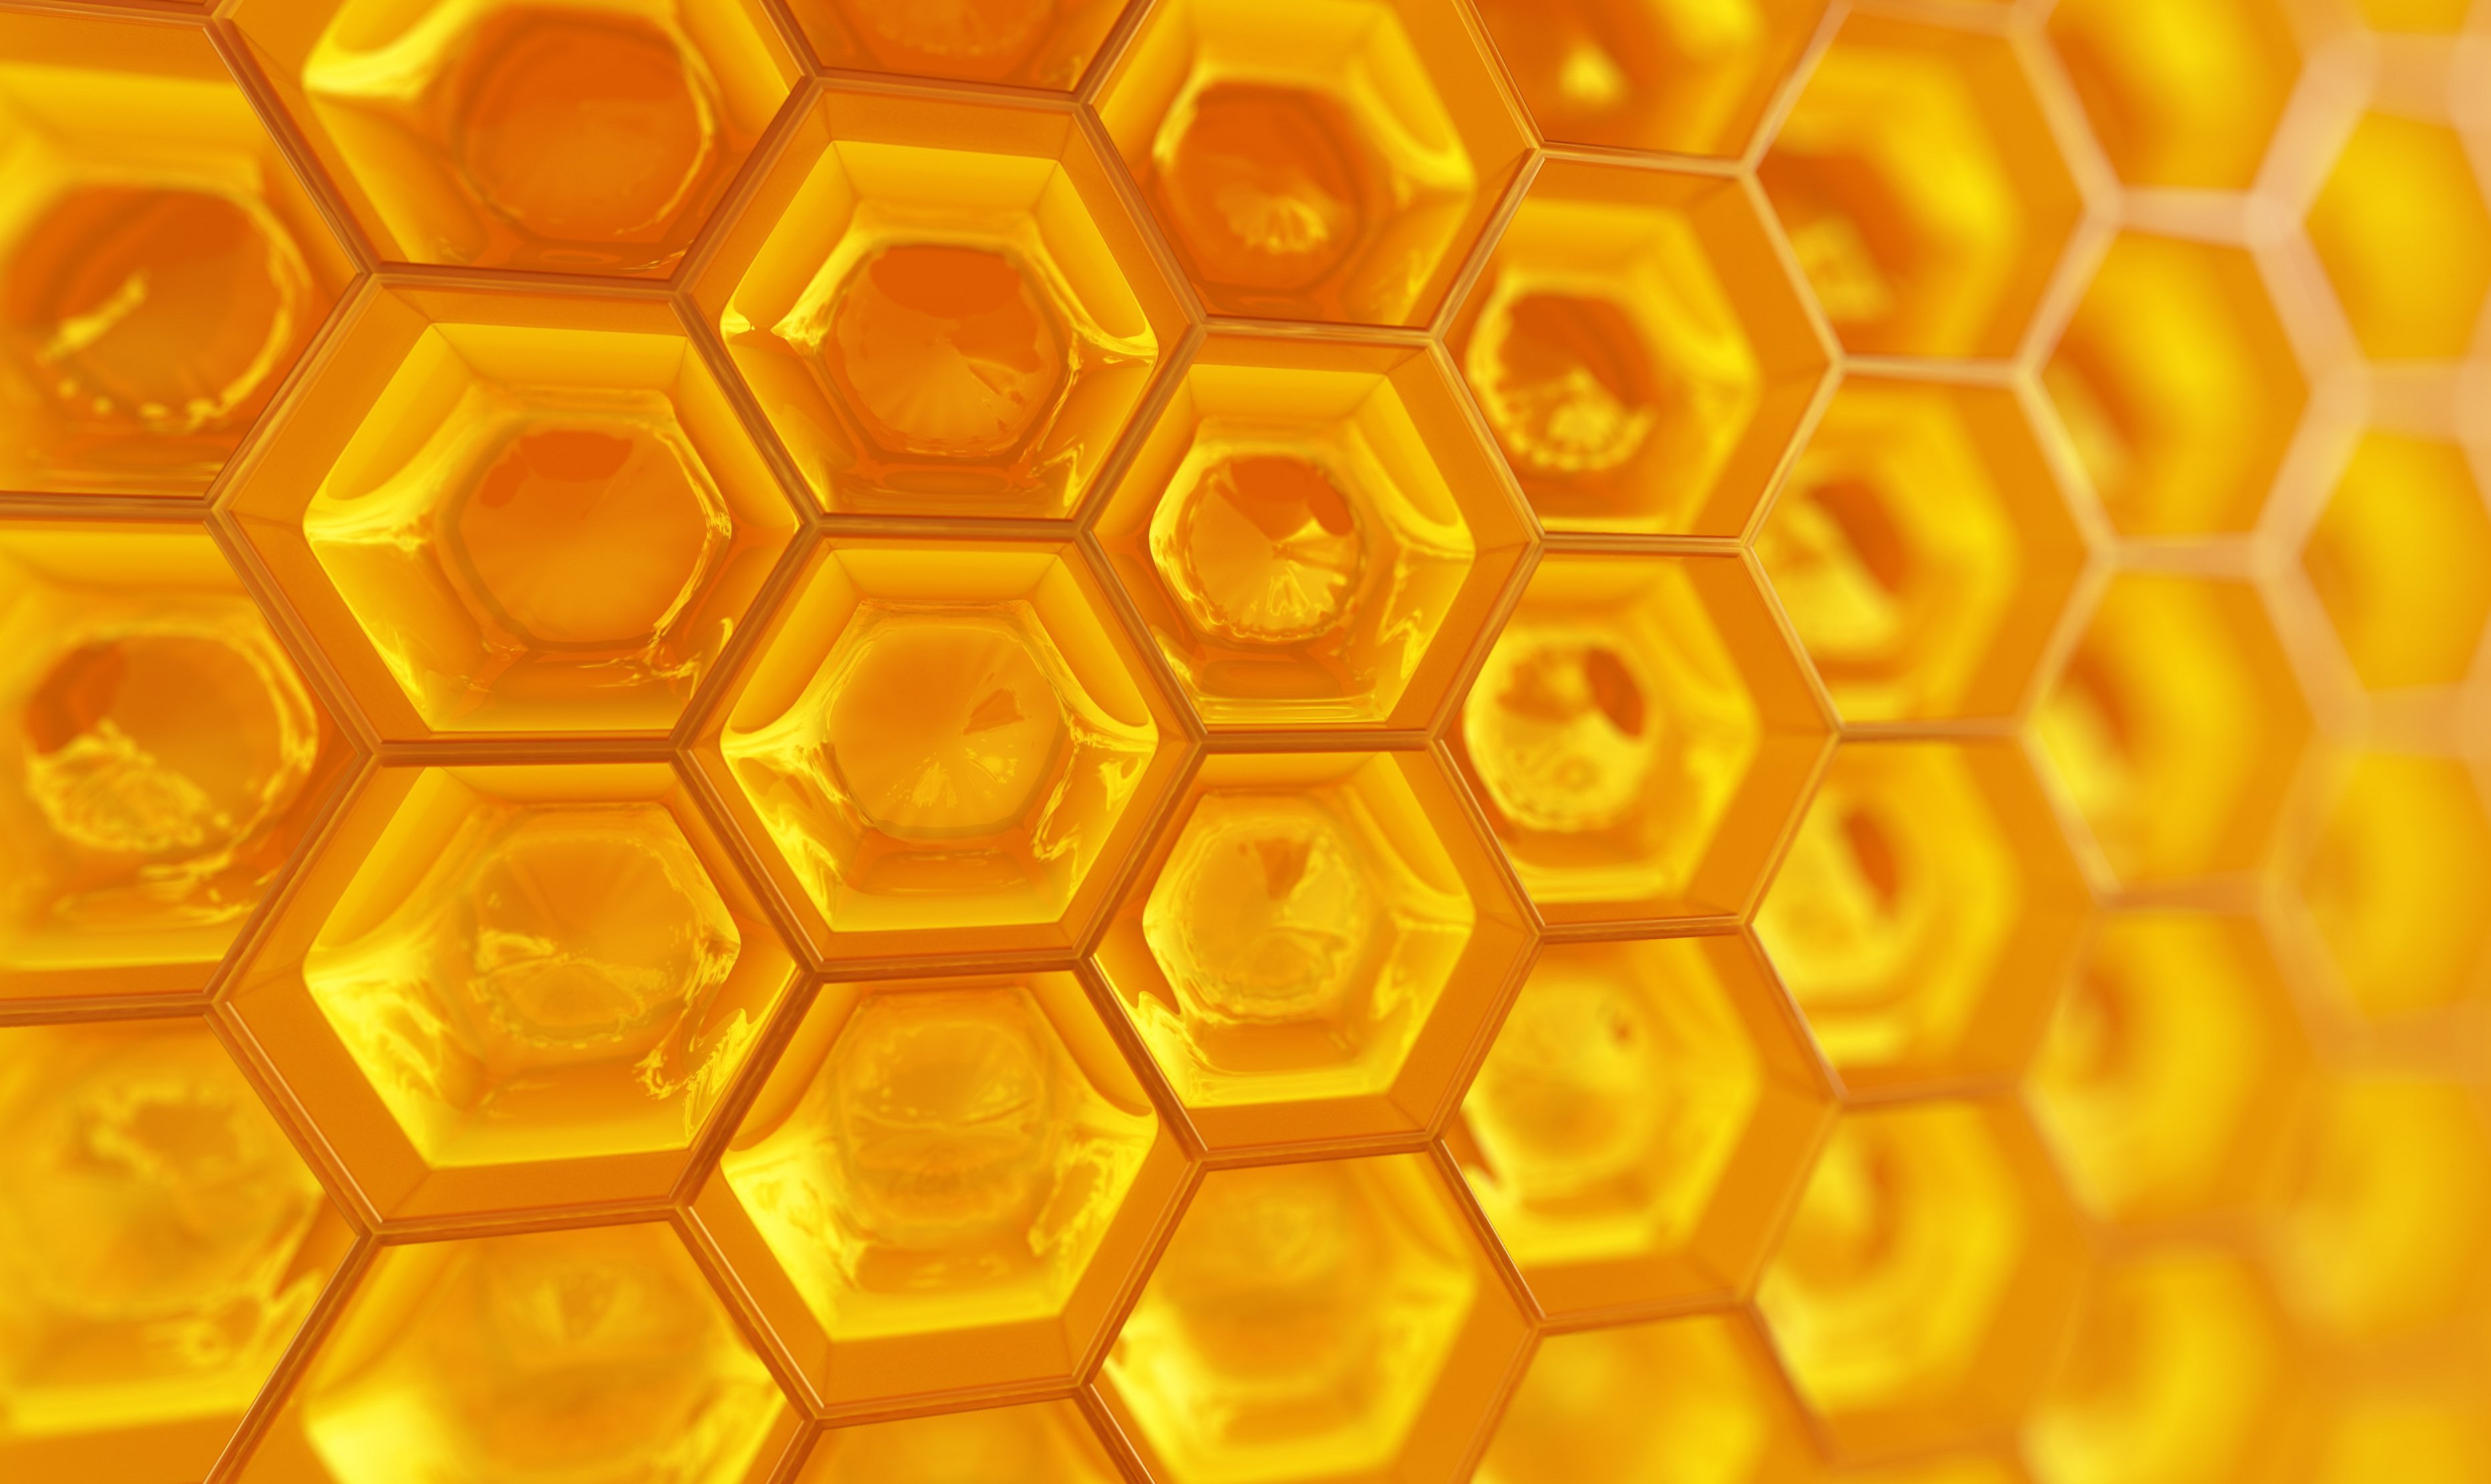 Вид сот. Соты Honeycomb Cell. Соты арт. Фон соты медовые. Пчелиные соты абстракция.